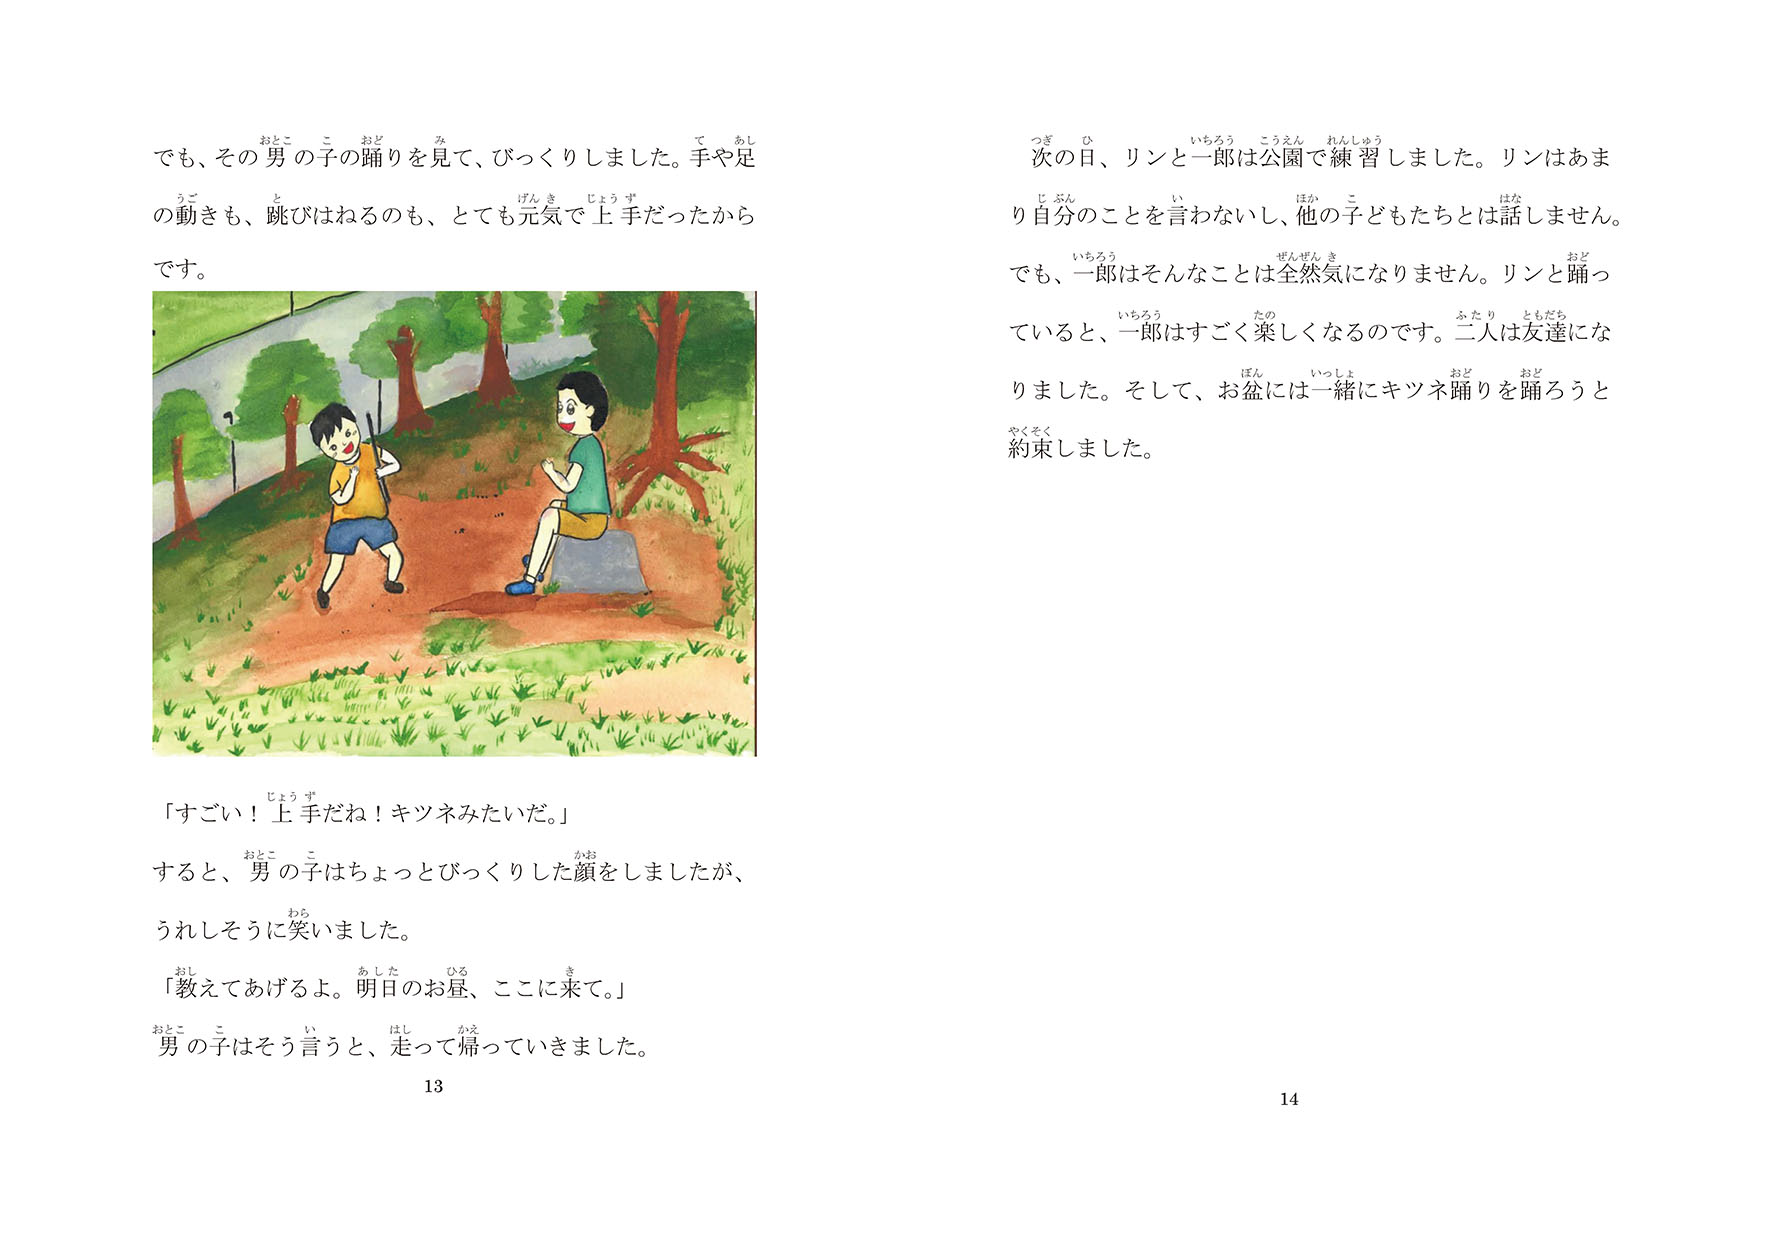 キツネ踊り 姫島の子どもたちがキツネになる日 にほんごたどく